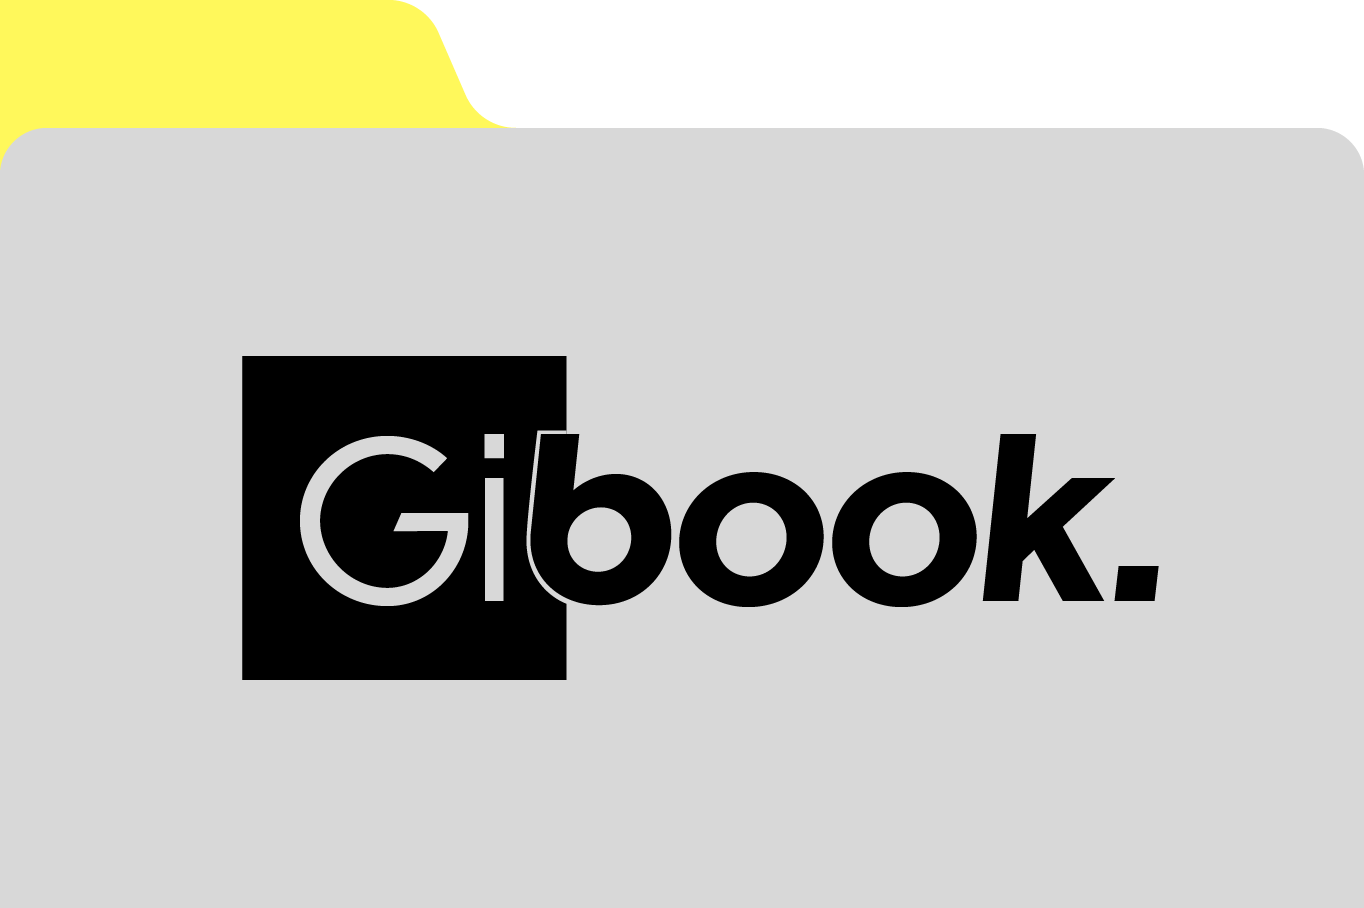 Gibook